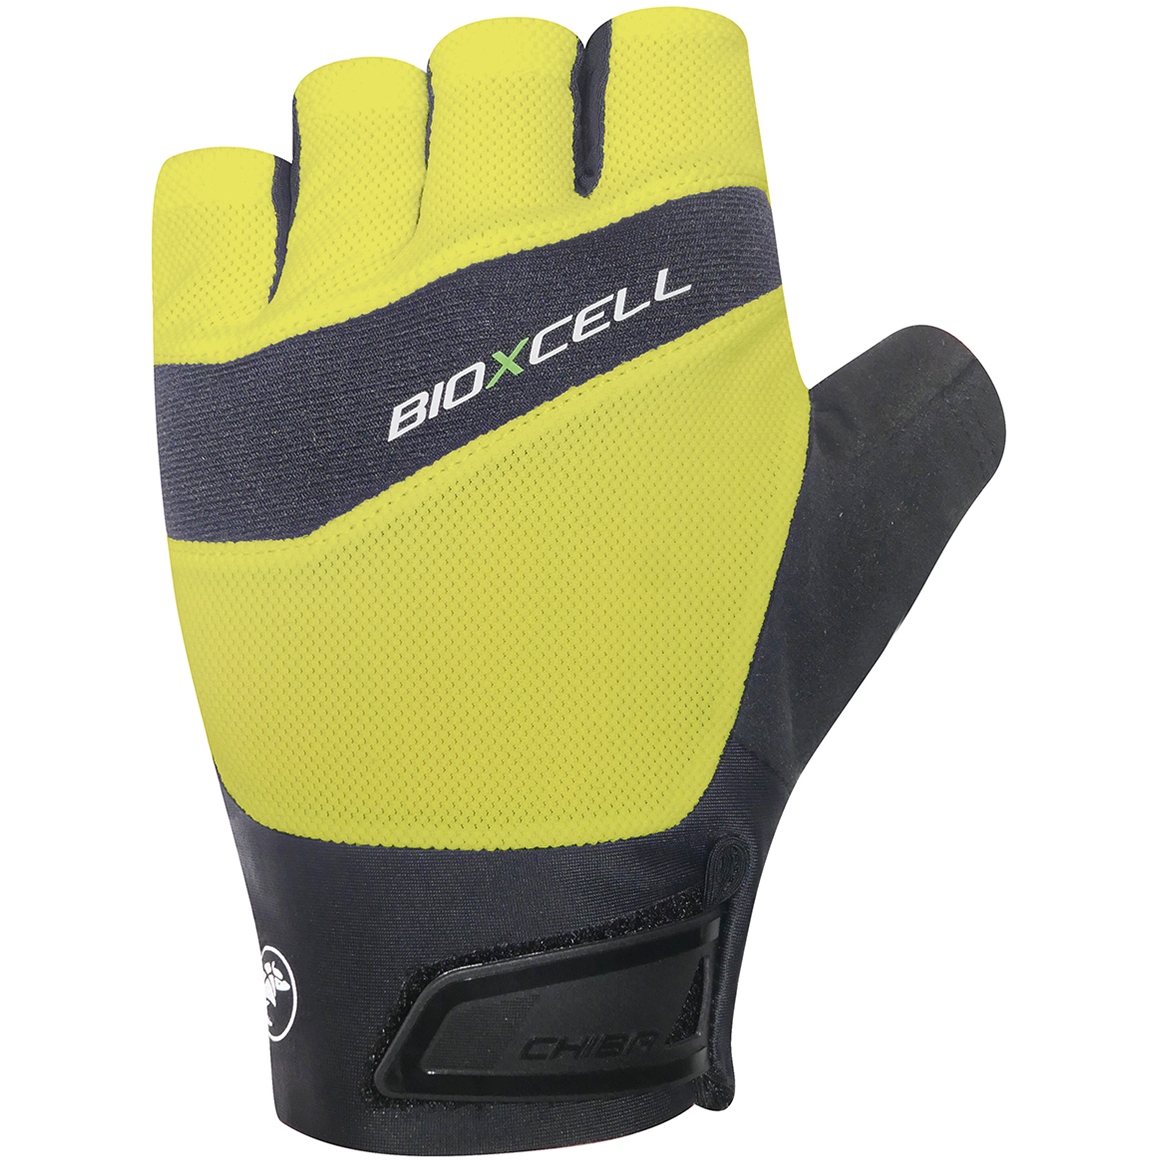 Productfoto van Chiba BioXCell Pro Handschoenen met Korte Vingers - neon yellow